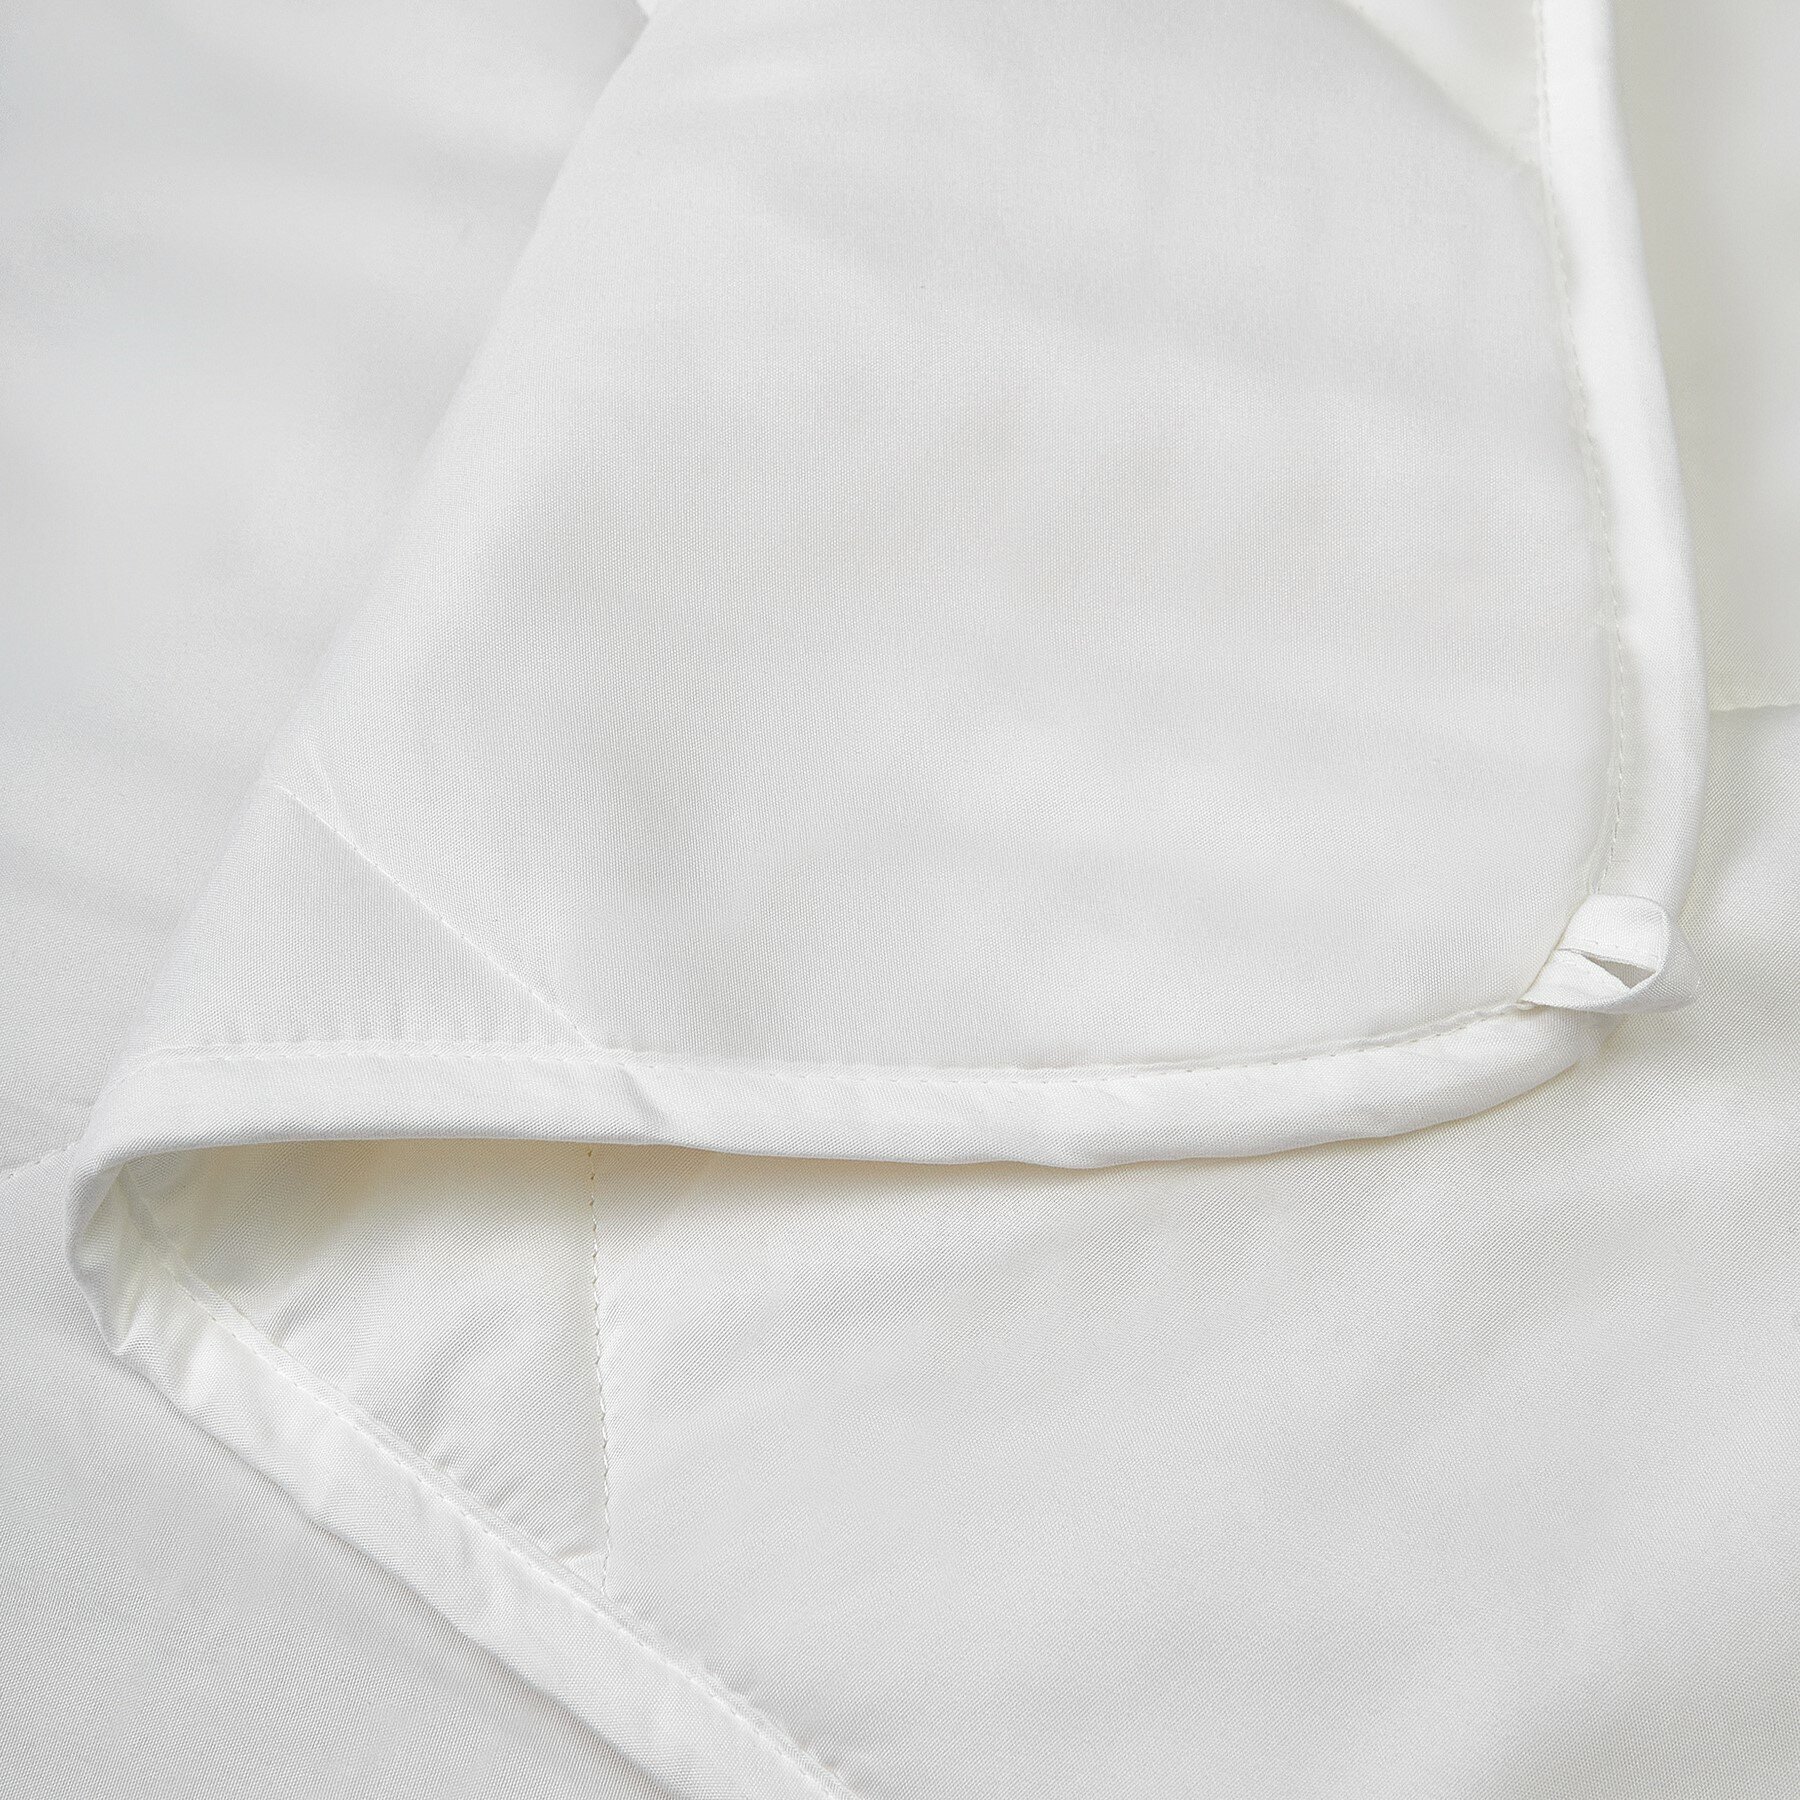 Одеяло гувер/BRUKSVARA легкое 200x220 100% полиэстер белое от FERESA